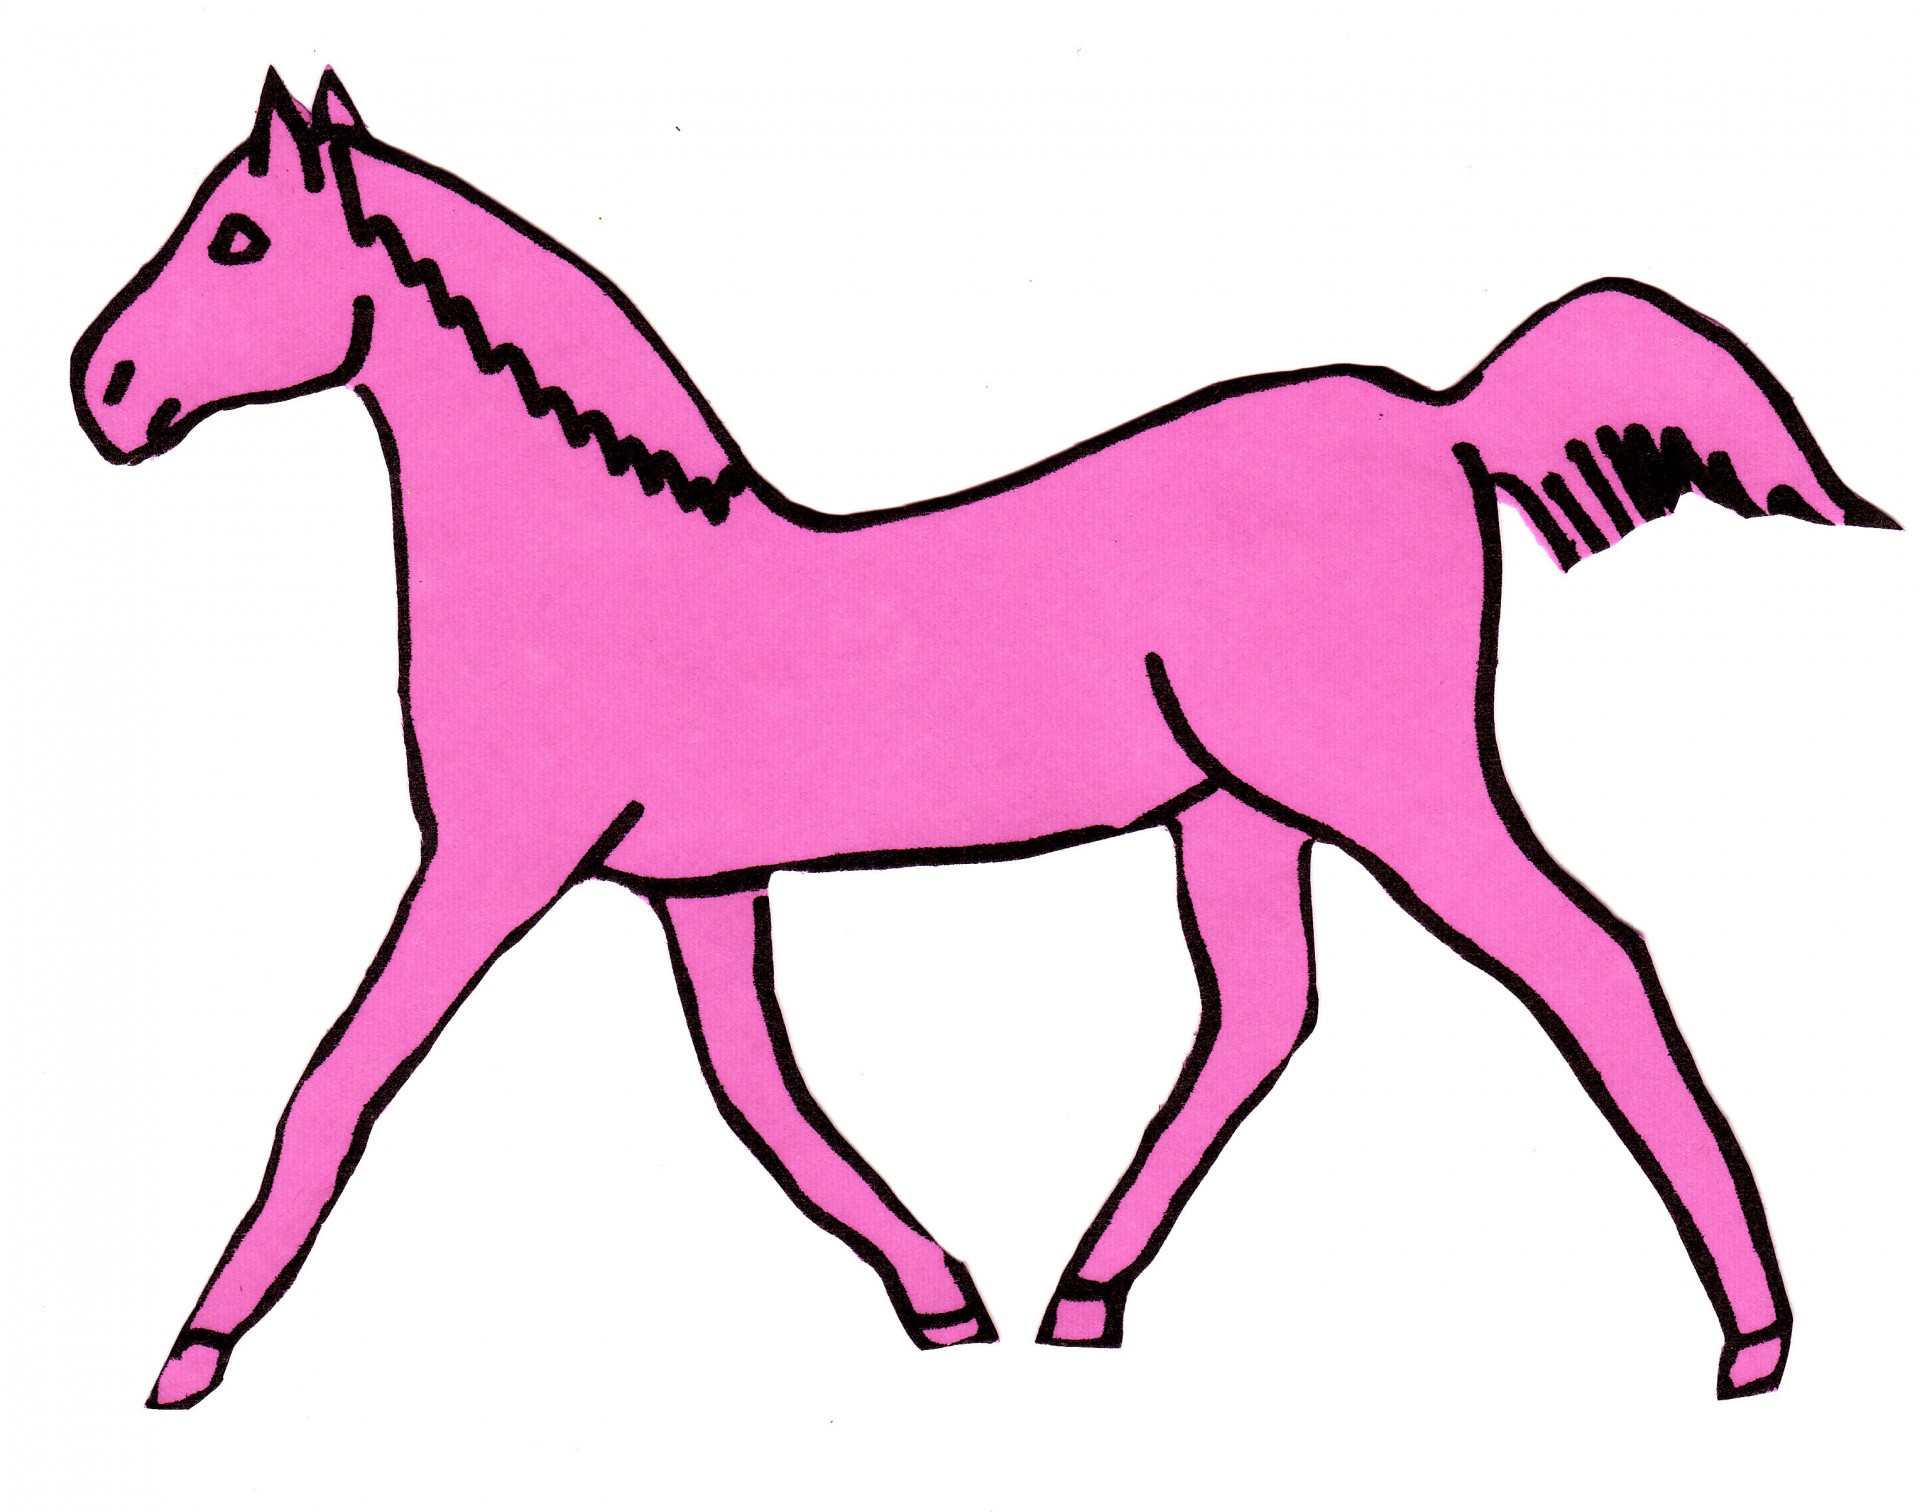 Cavalo-de-rosa trote